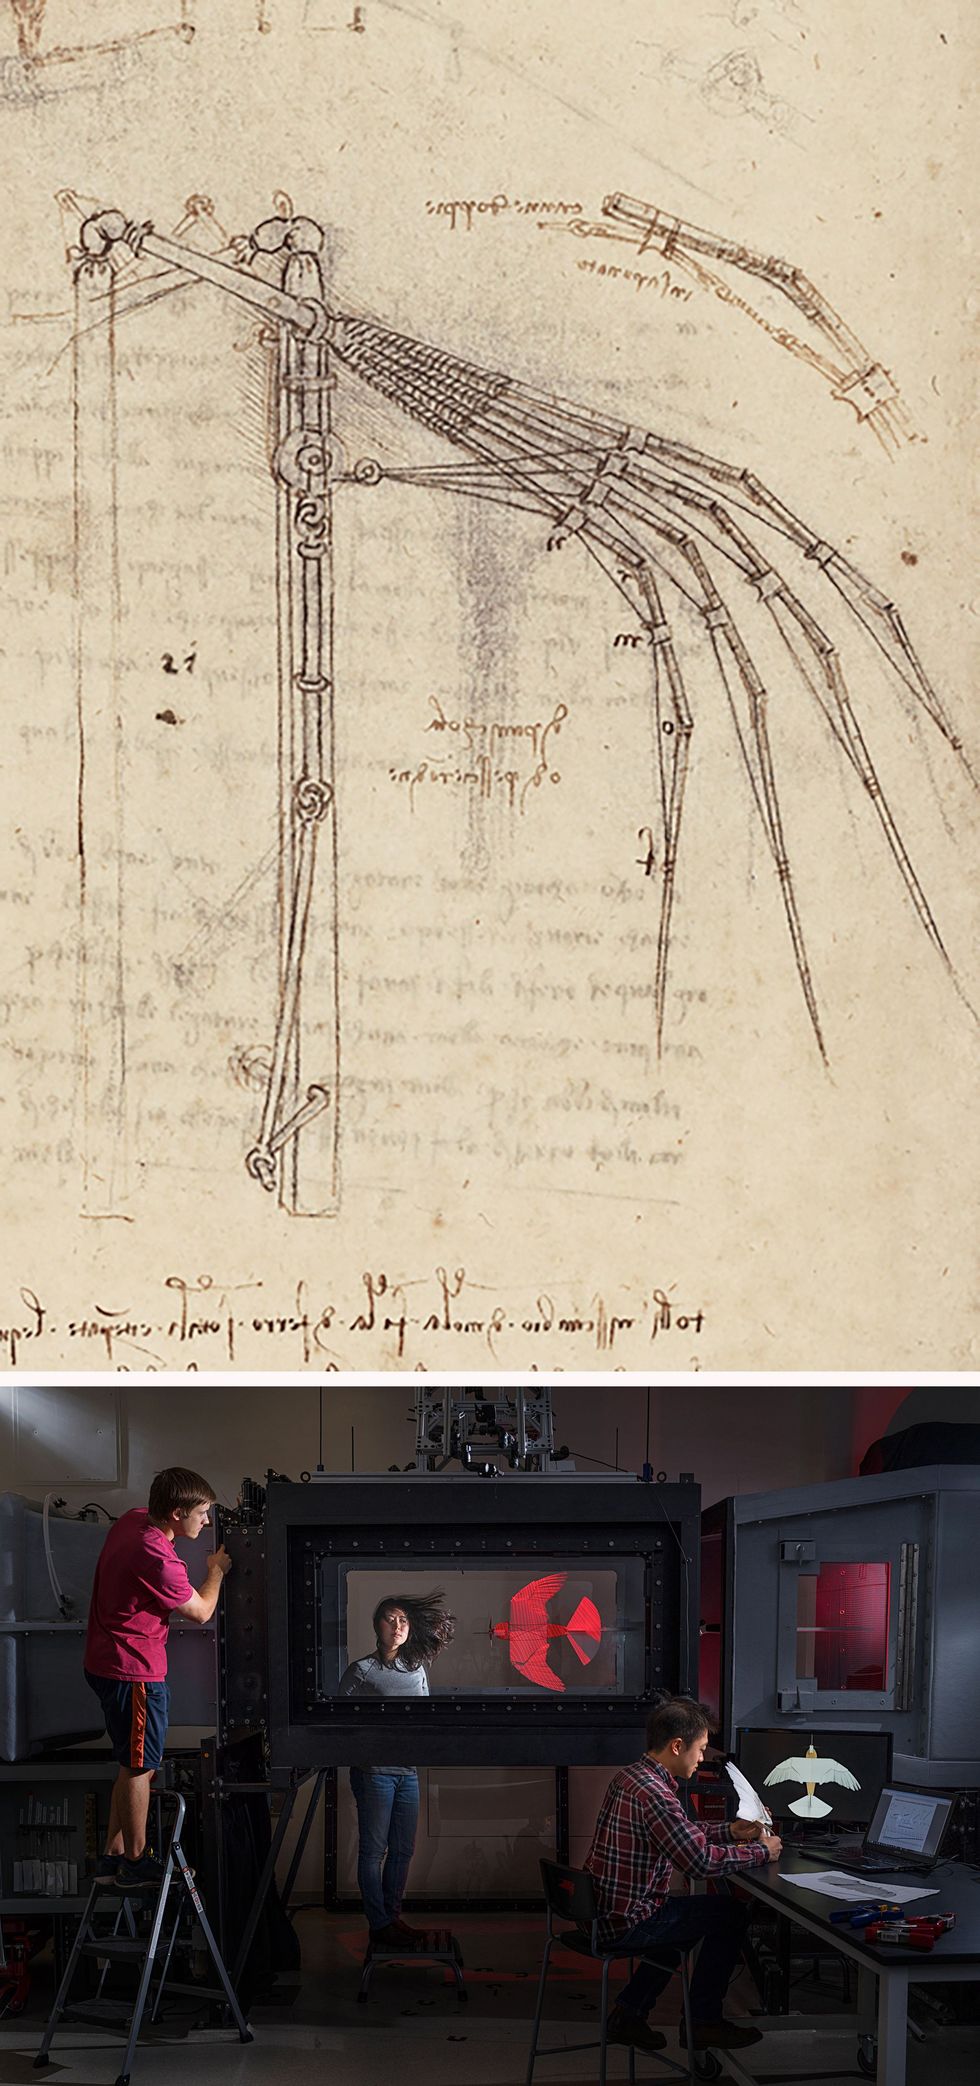 DE INGENIEURBOVEN Da Vinci was gefascineerd door techniek en hij ontwierp bruggen gebouwen en militair materieel Maar het allerliefst wilde hij een machine ontwerpen waar mensen mee konden vliegen Daarom bestudeerde hij meer dan twintig jaar lang de vlucht van dieren Op een pagina in de Codex Atlanticus schetste hij dit ontwerp voor een mechanische vleugel ONDER Promovendi in het lab van de Nederlander David Lentink in Stanford bestuderen de invloed van luchtsnelheid en turbulentie op hun robotvogel PigeonBot in een speciale windtunnel De data die dat oplevert moeten leiden tot een beter begrip van de mechanica van het vliegen van vogels